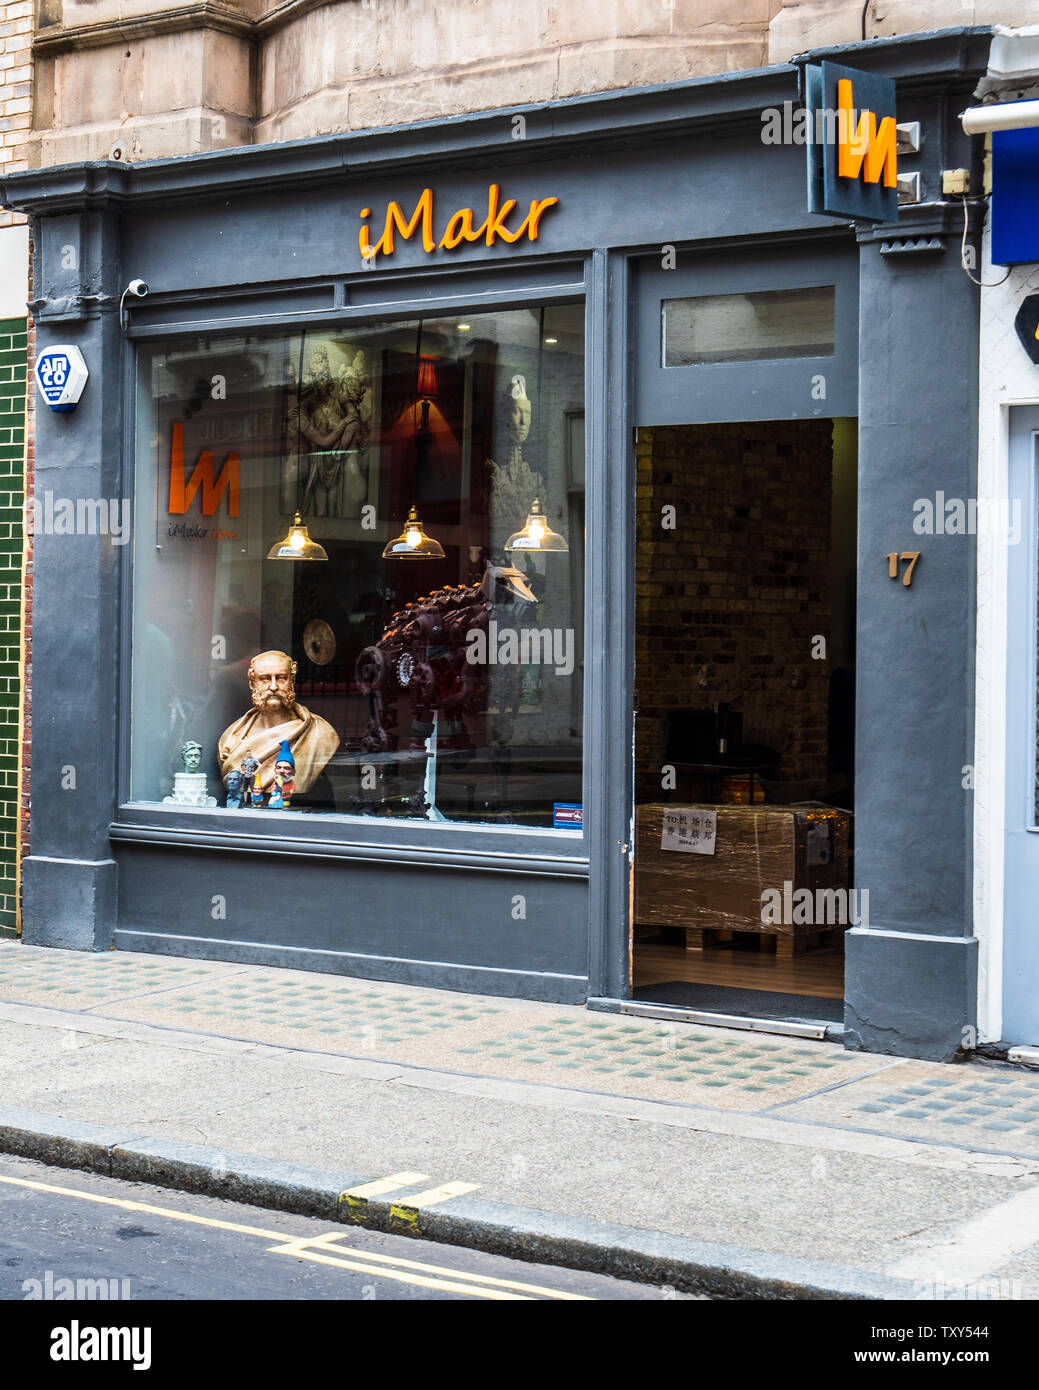 IMakr store London - IMakr sind die weltweit größte unabhängige 3D-Drucken speichern. In Wells Street London. IMakr.com Stockfoto